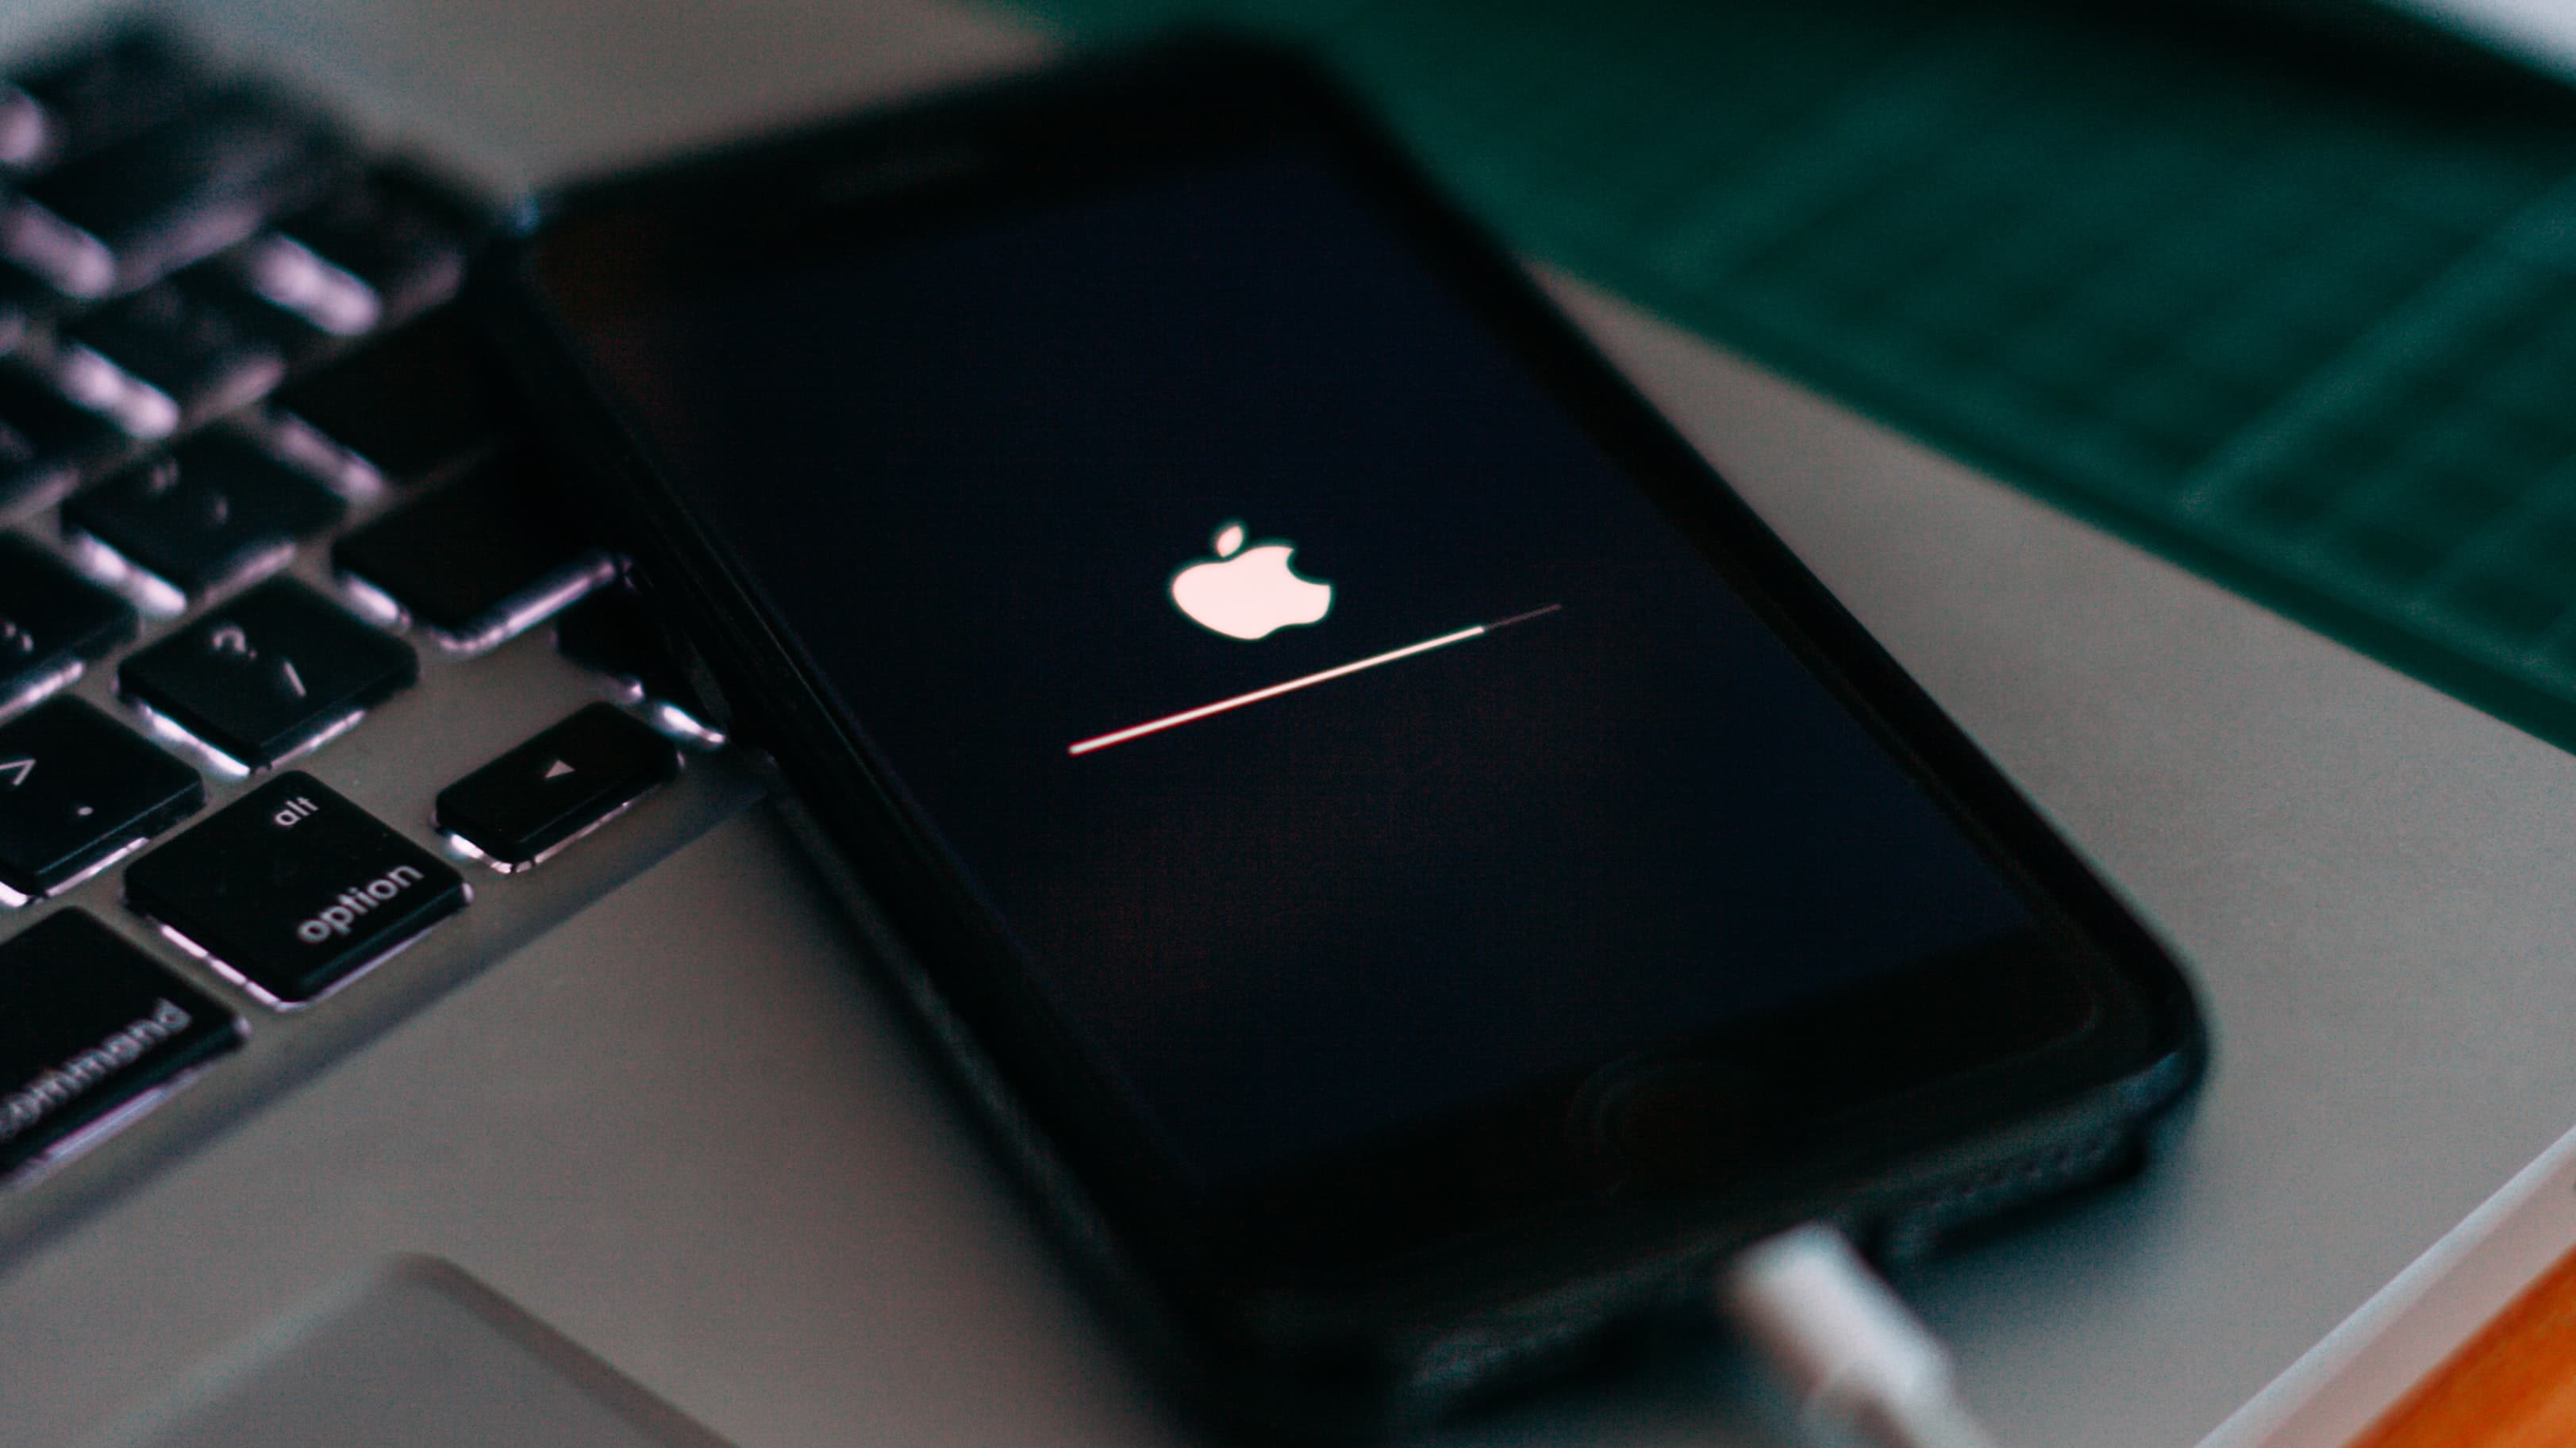 Un iPhone posé sur un MacBook, affichant une barre de progression de la mise à jour iOS